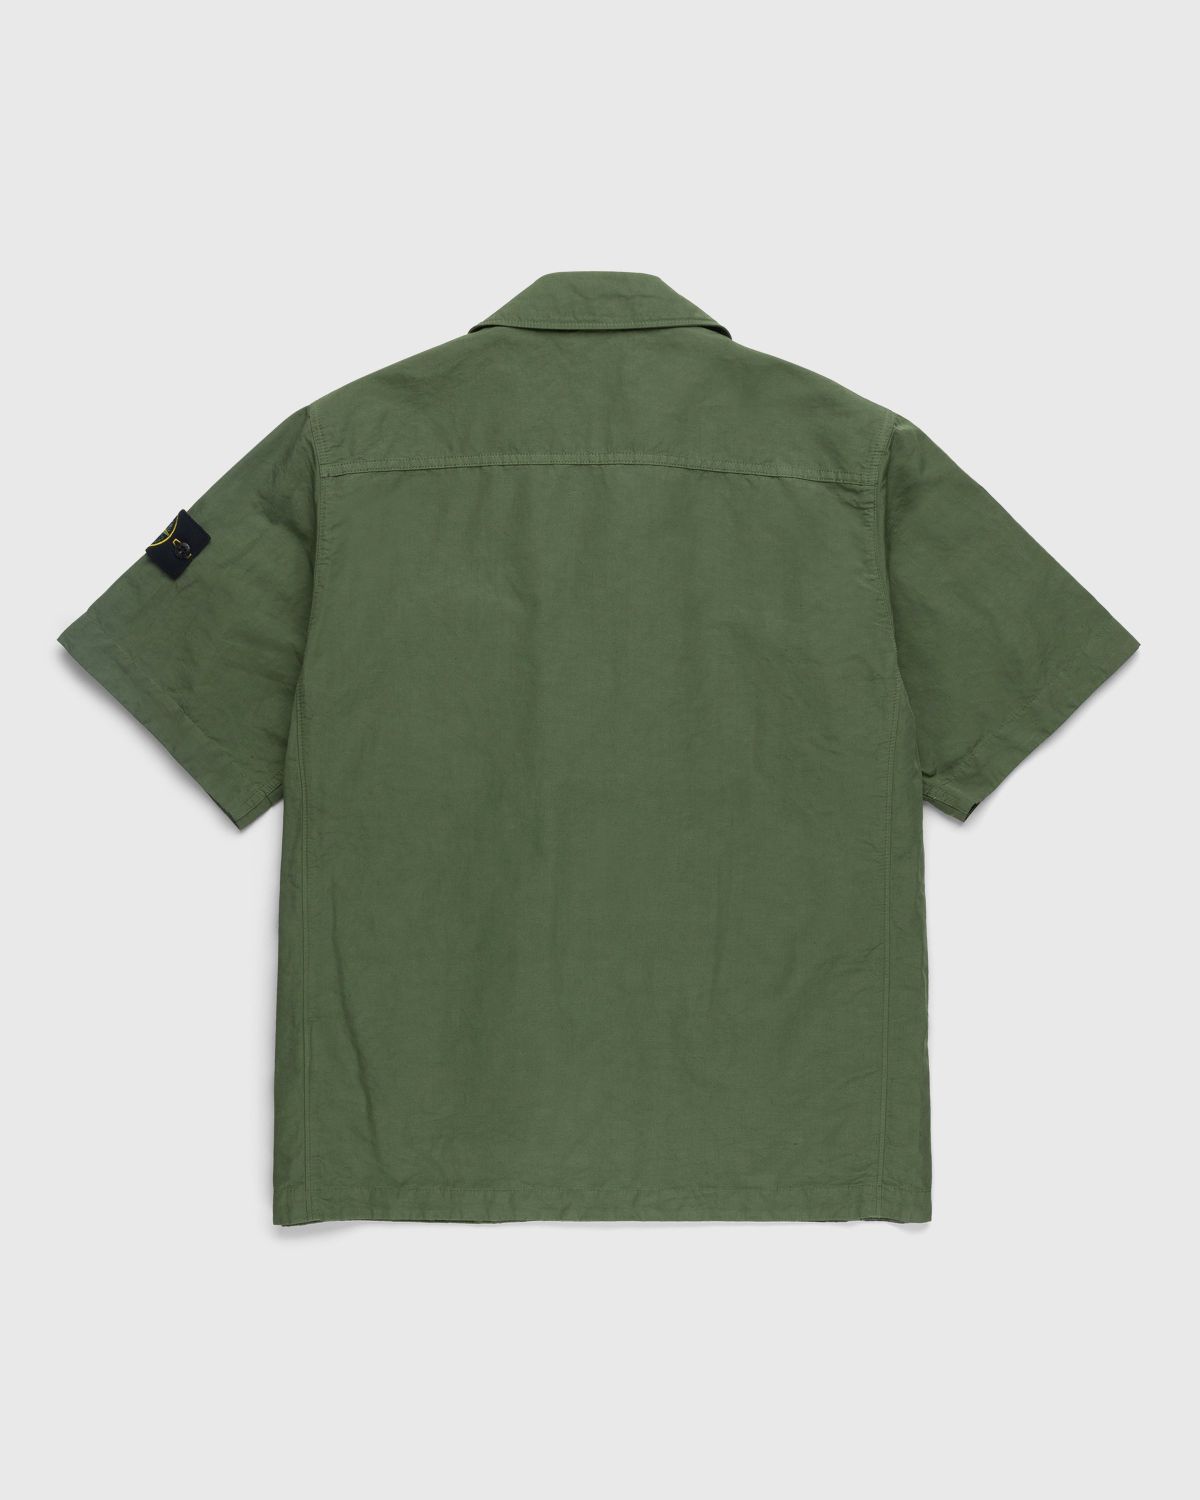 Stone Island – 42406 Garment-Dyed Shirt Jacket With Detachable Vest Olive - Shortsleeve Shirts - Green - Image 2